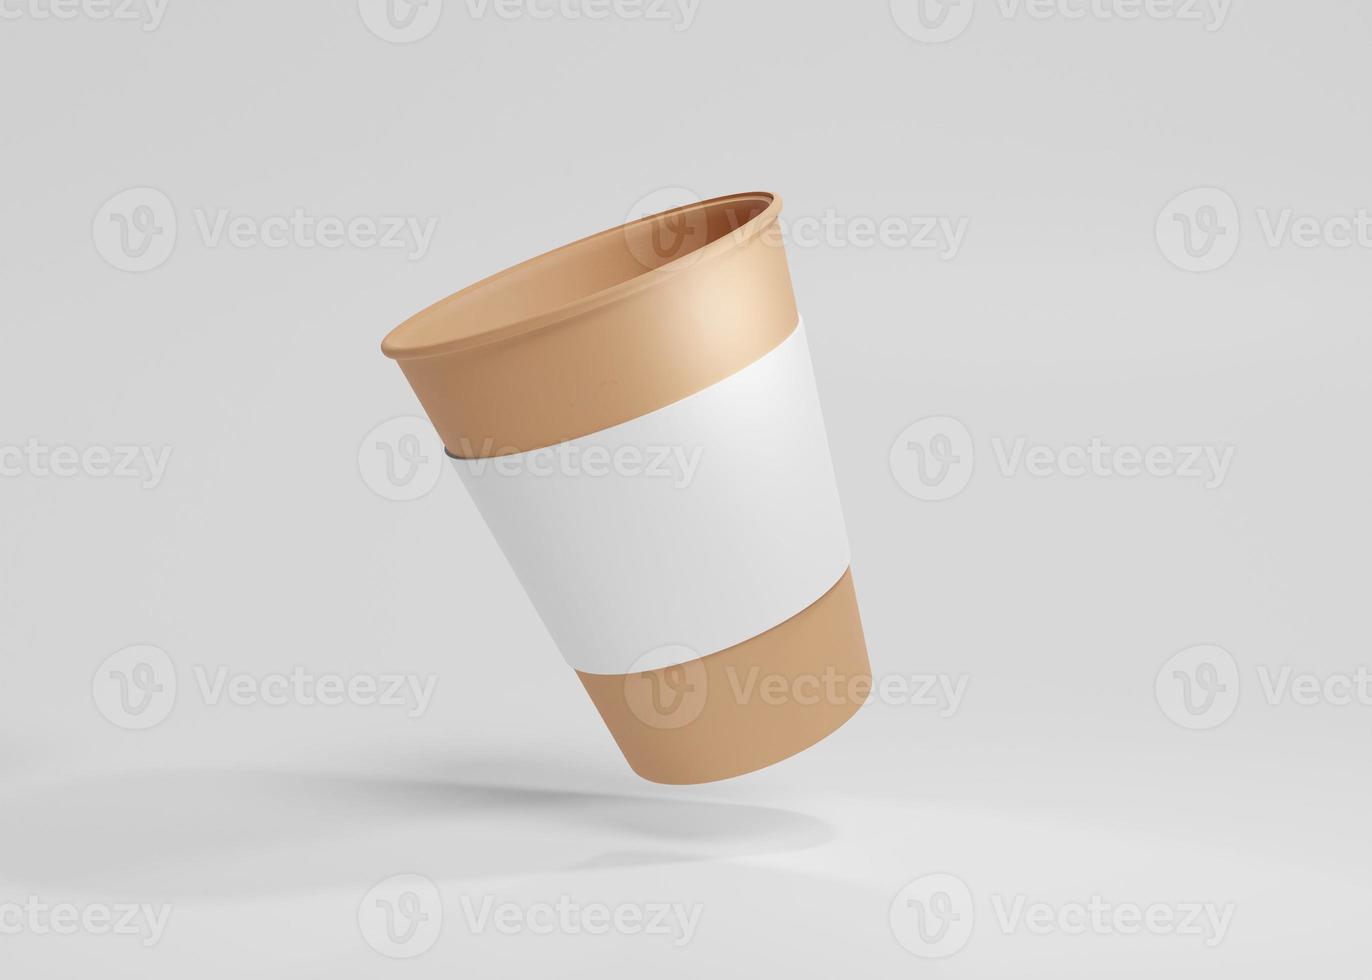 Kaffeetassenmodell aus braunem Papier, recycelbarer Pappbecher mit hellgrauem Hintergrund foto